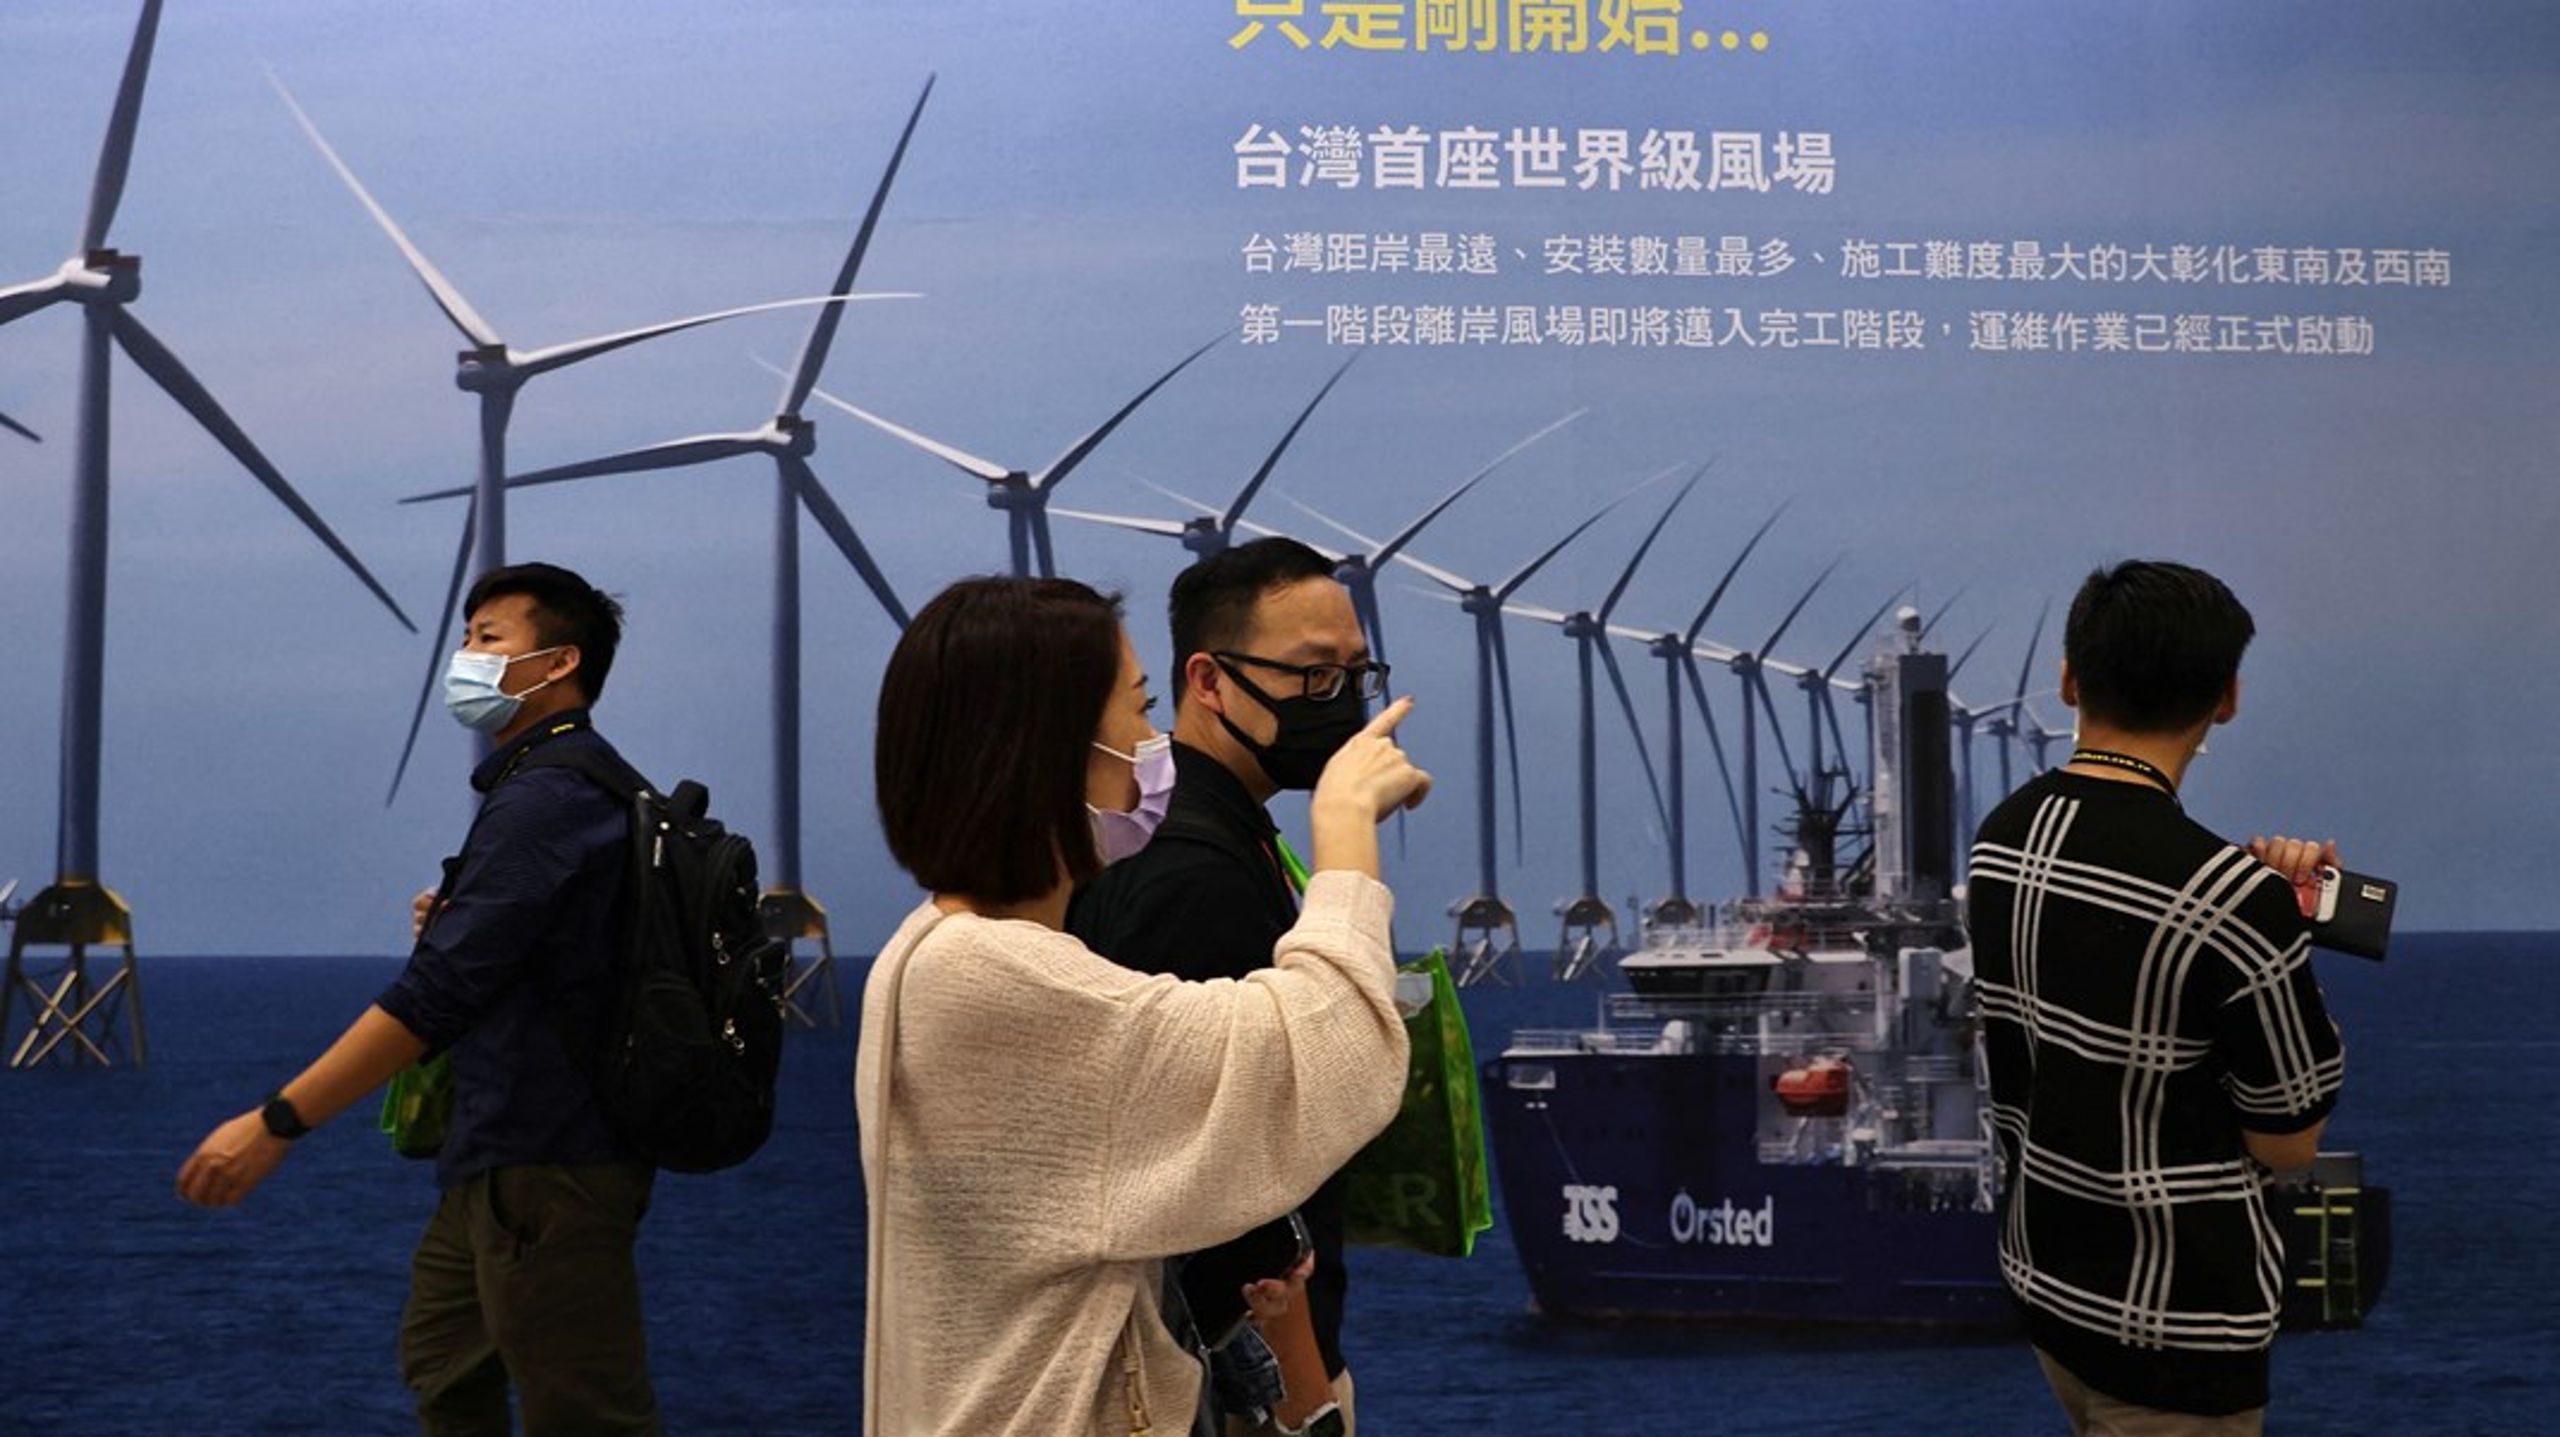 Kina er et stort marked for dansk klimateknologi, men flere virksomheder er begyndt at sprede deres aktiviteter. Danske Ørsted er med 35 procent den største aktionær i Taiwans første kommercielle havvindmølleprojekt, Formosa 1, som her præsenteres under Energy Expo i Taipei i oktober 2022.